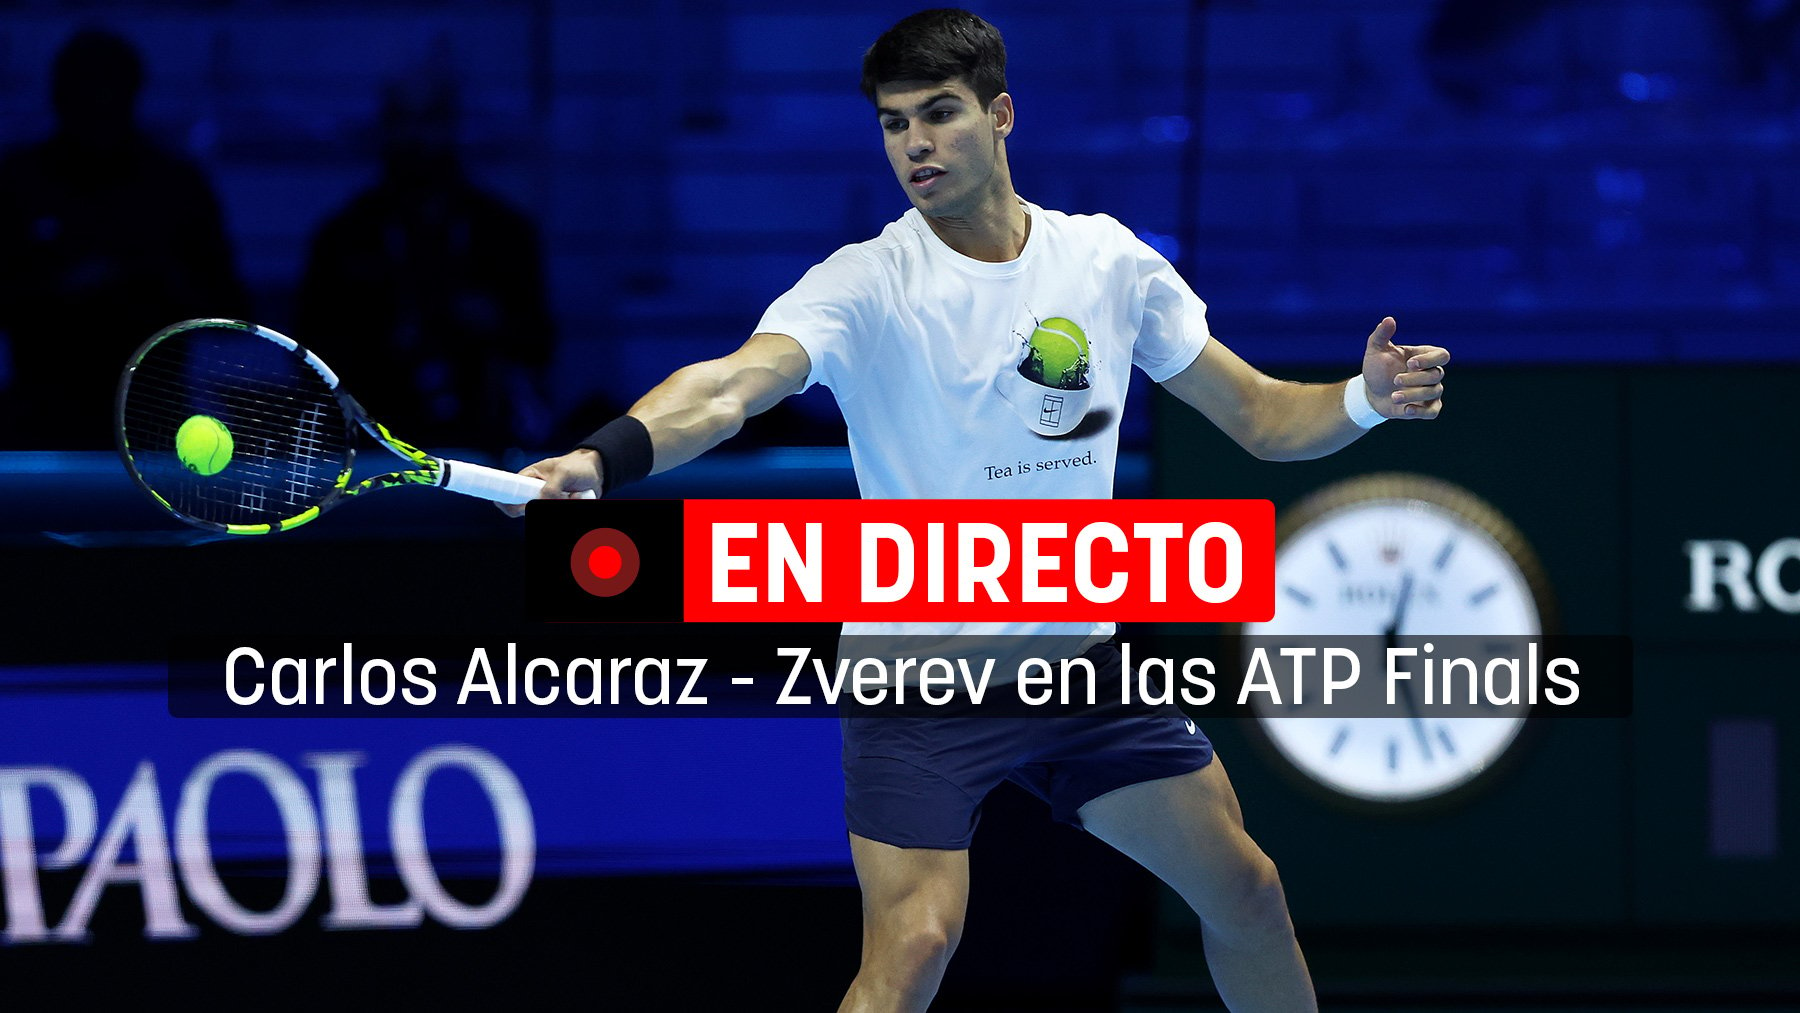 Sigue en directo el partido de Carlos Alcaraz contra Zverev en las ATP Finals